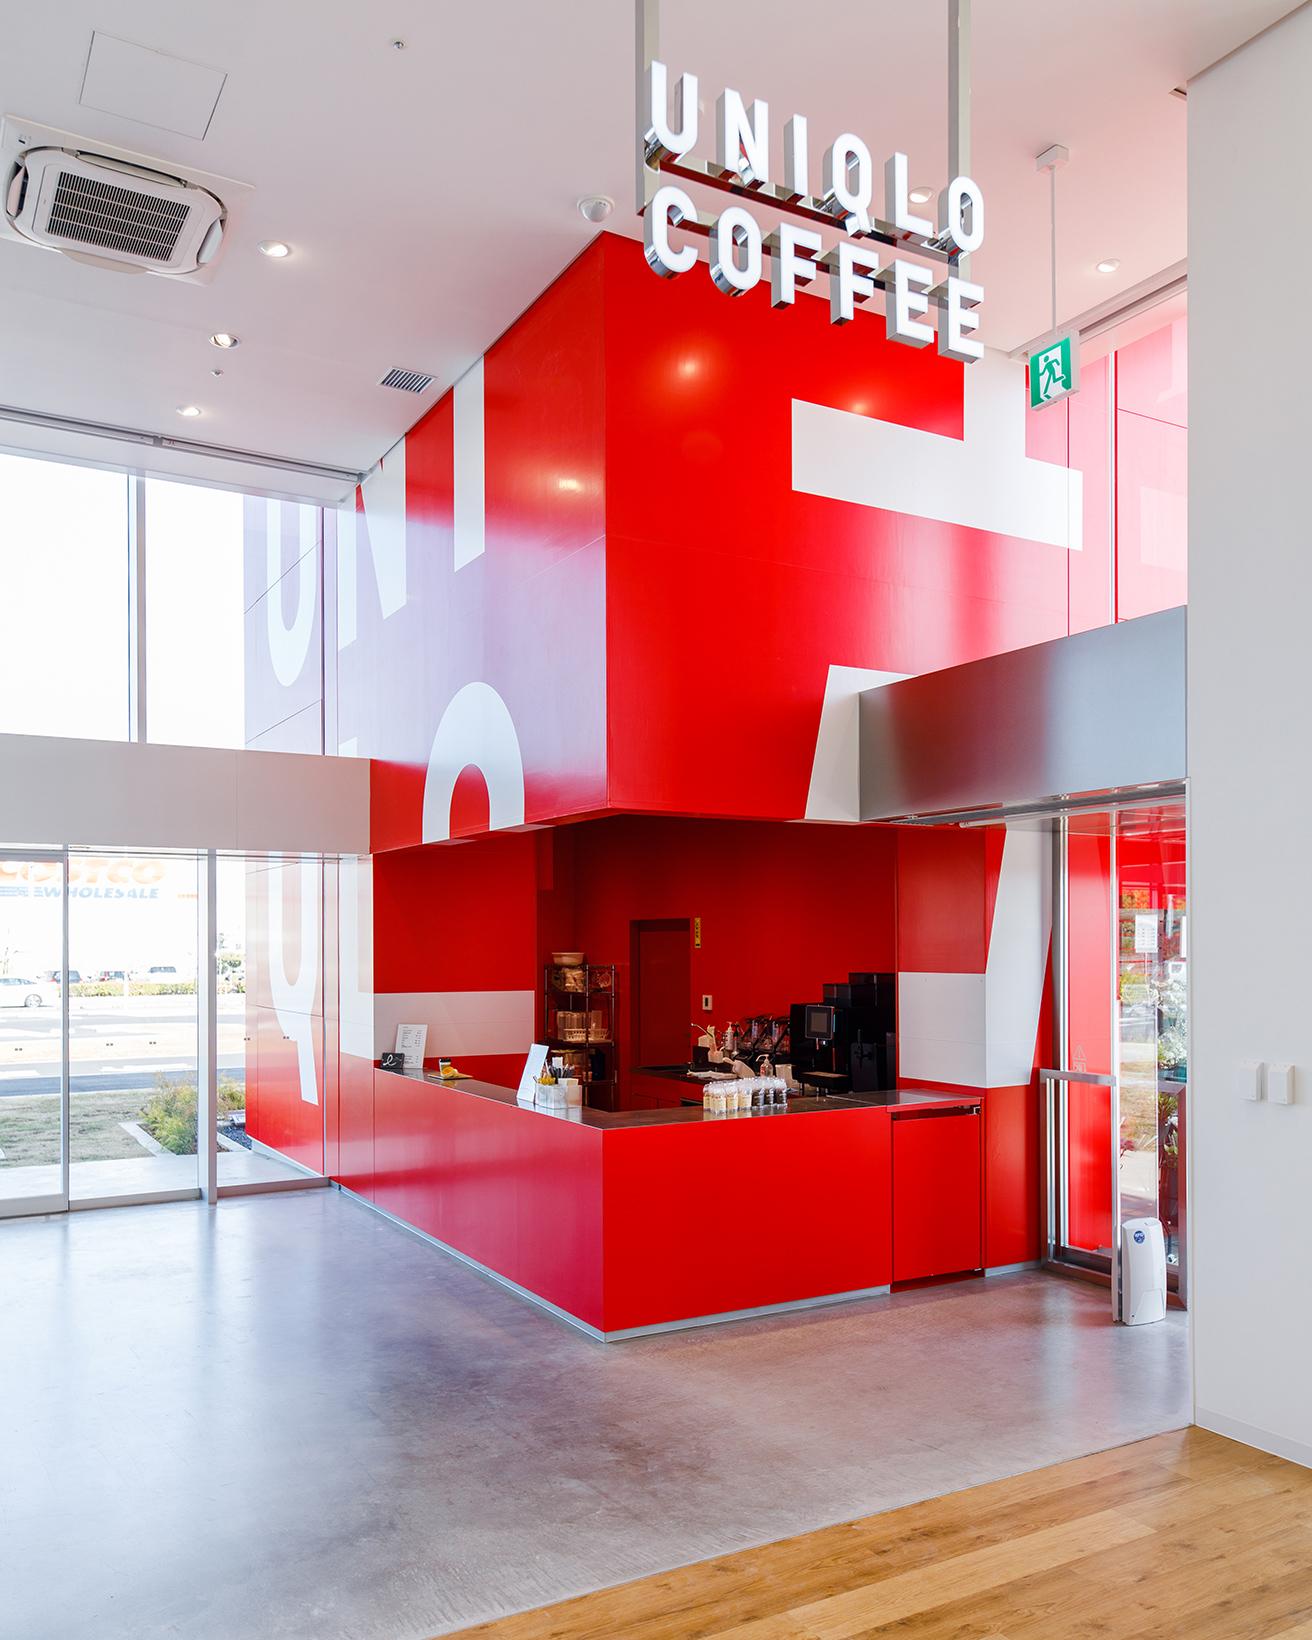 さらに店内側はカフェ「UNIQLO COFFEE」のカウンターになっている。